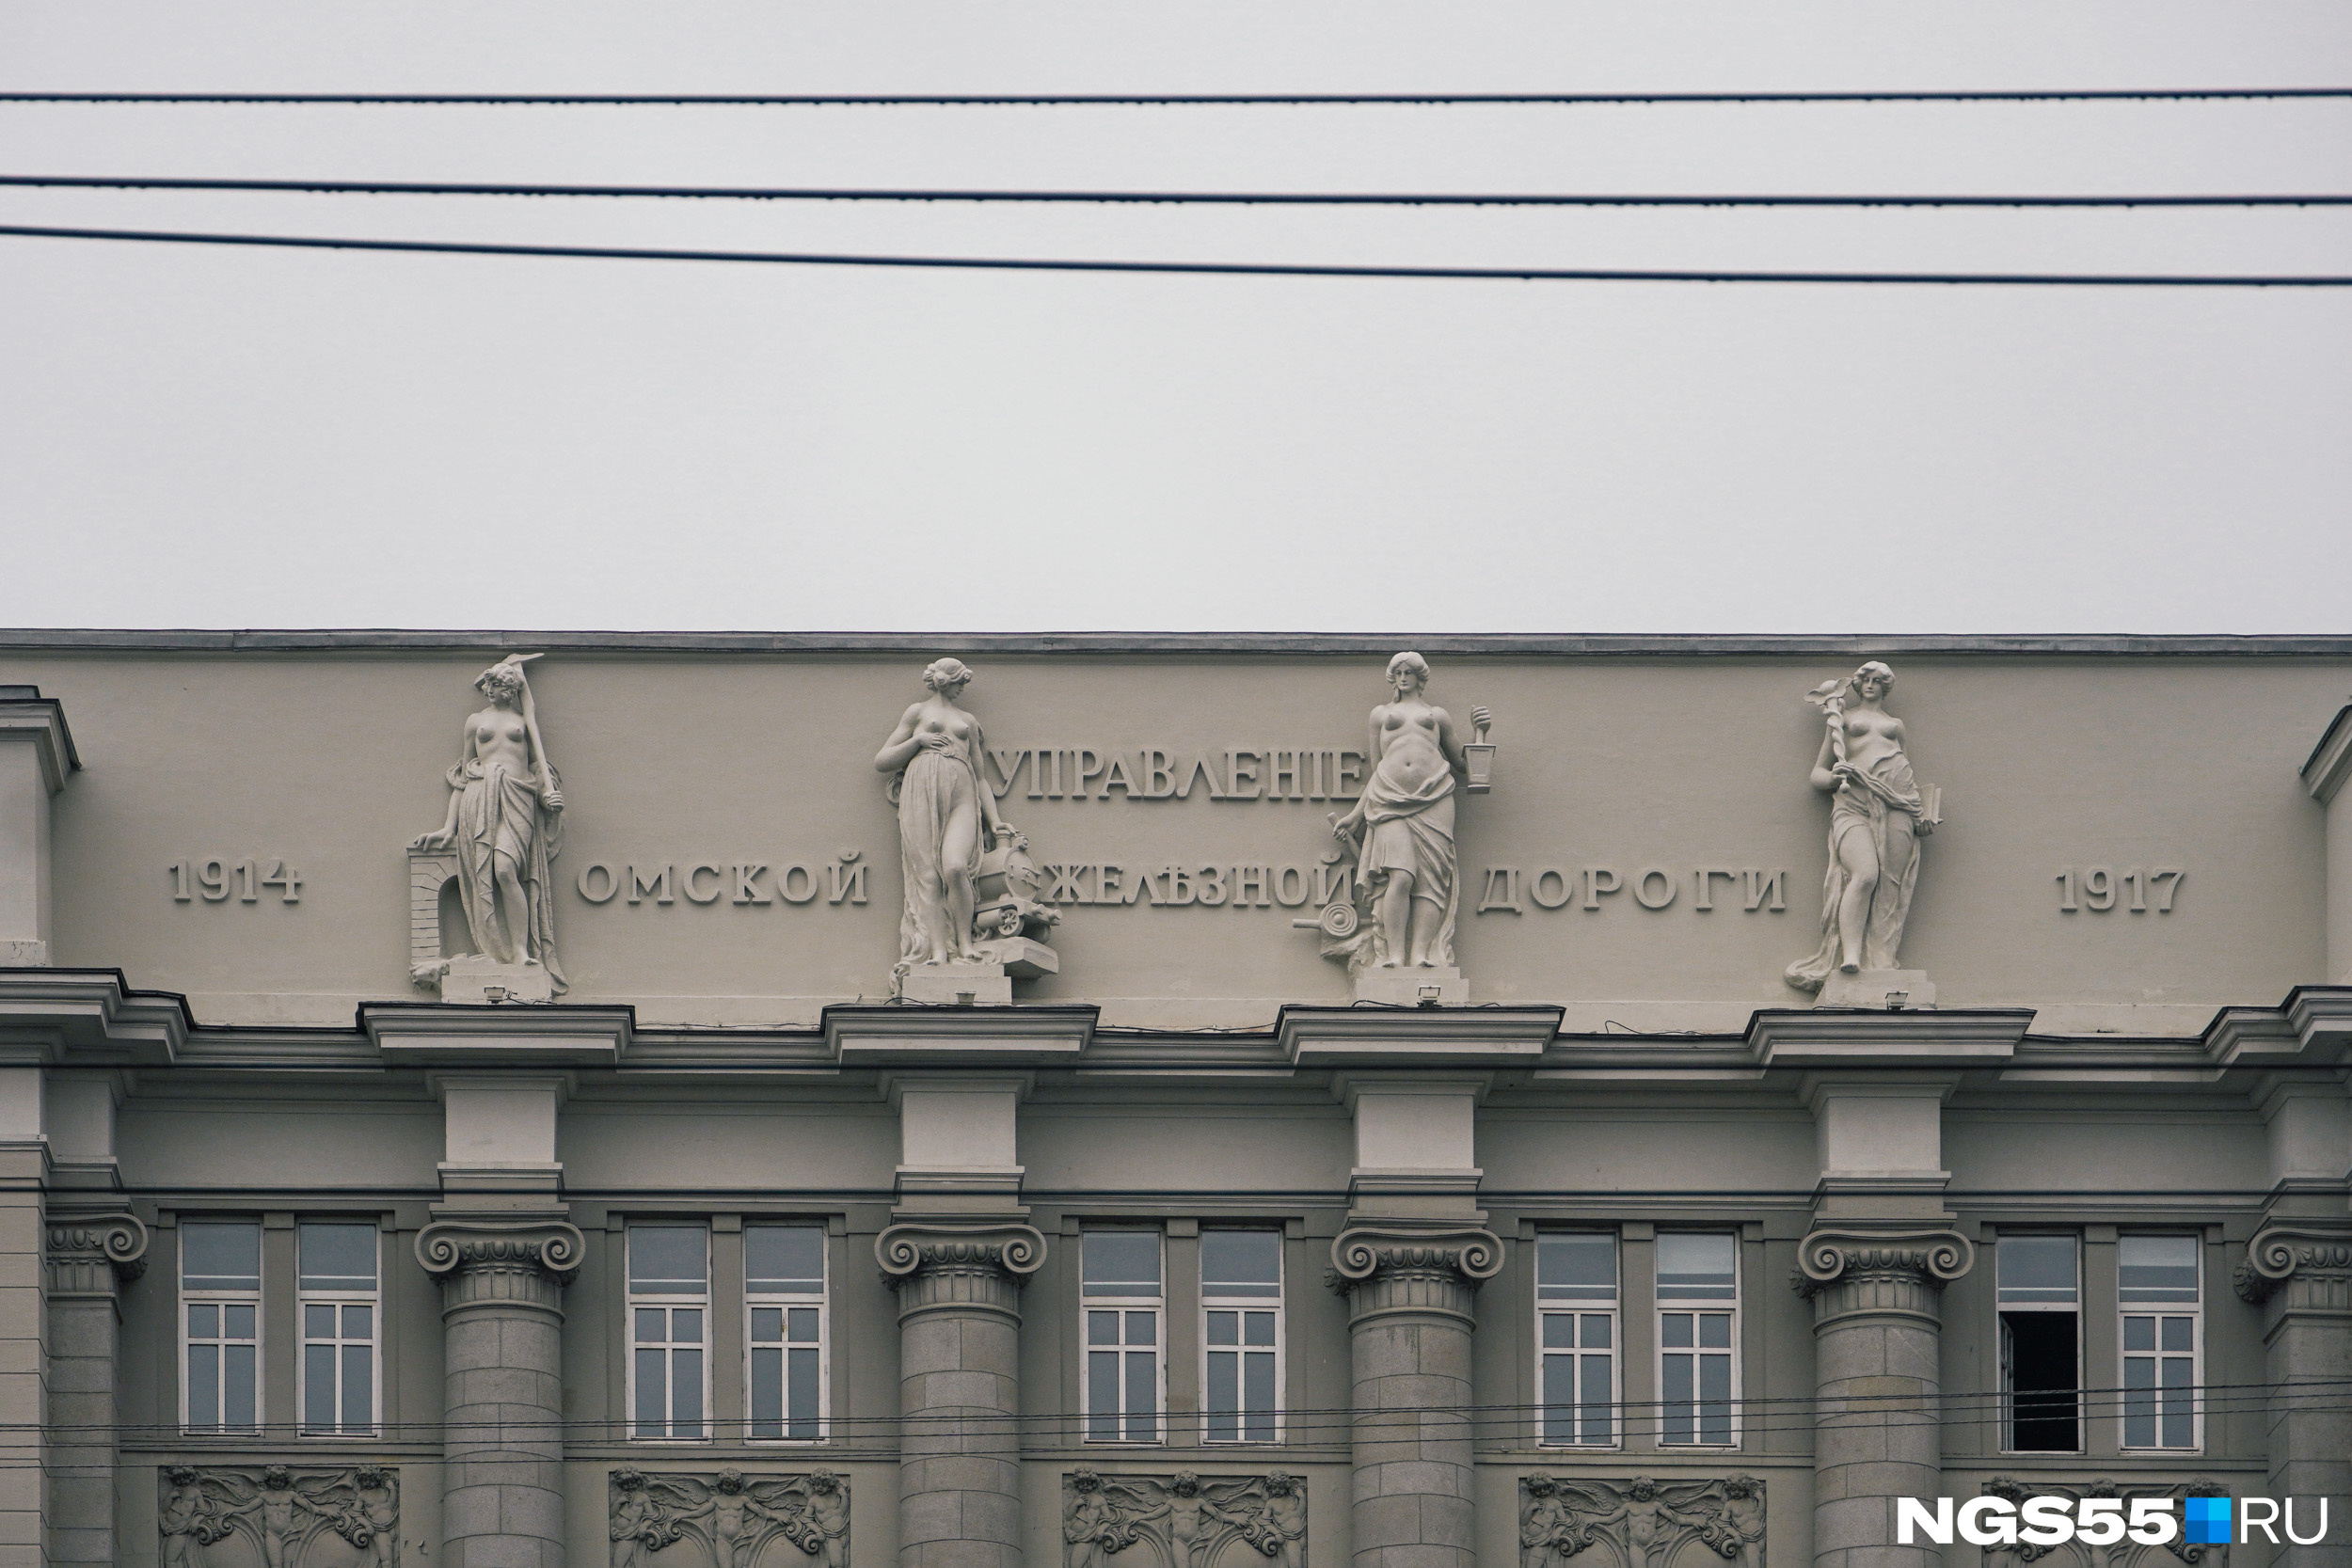 Фасад главного корпуса украшают скульптуры богинь. Почитайте, <a href="https://ngs55.ru/text/culture/2022/05/13/71320706/" class="_" target="_blank">как они там оказались</a>